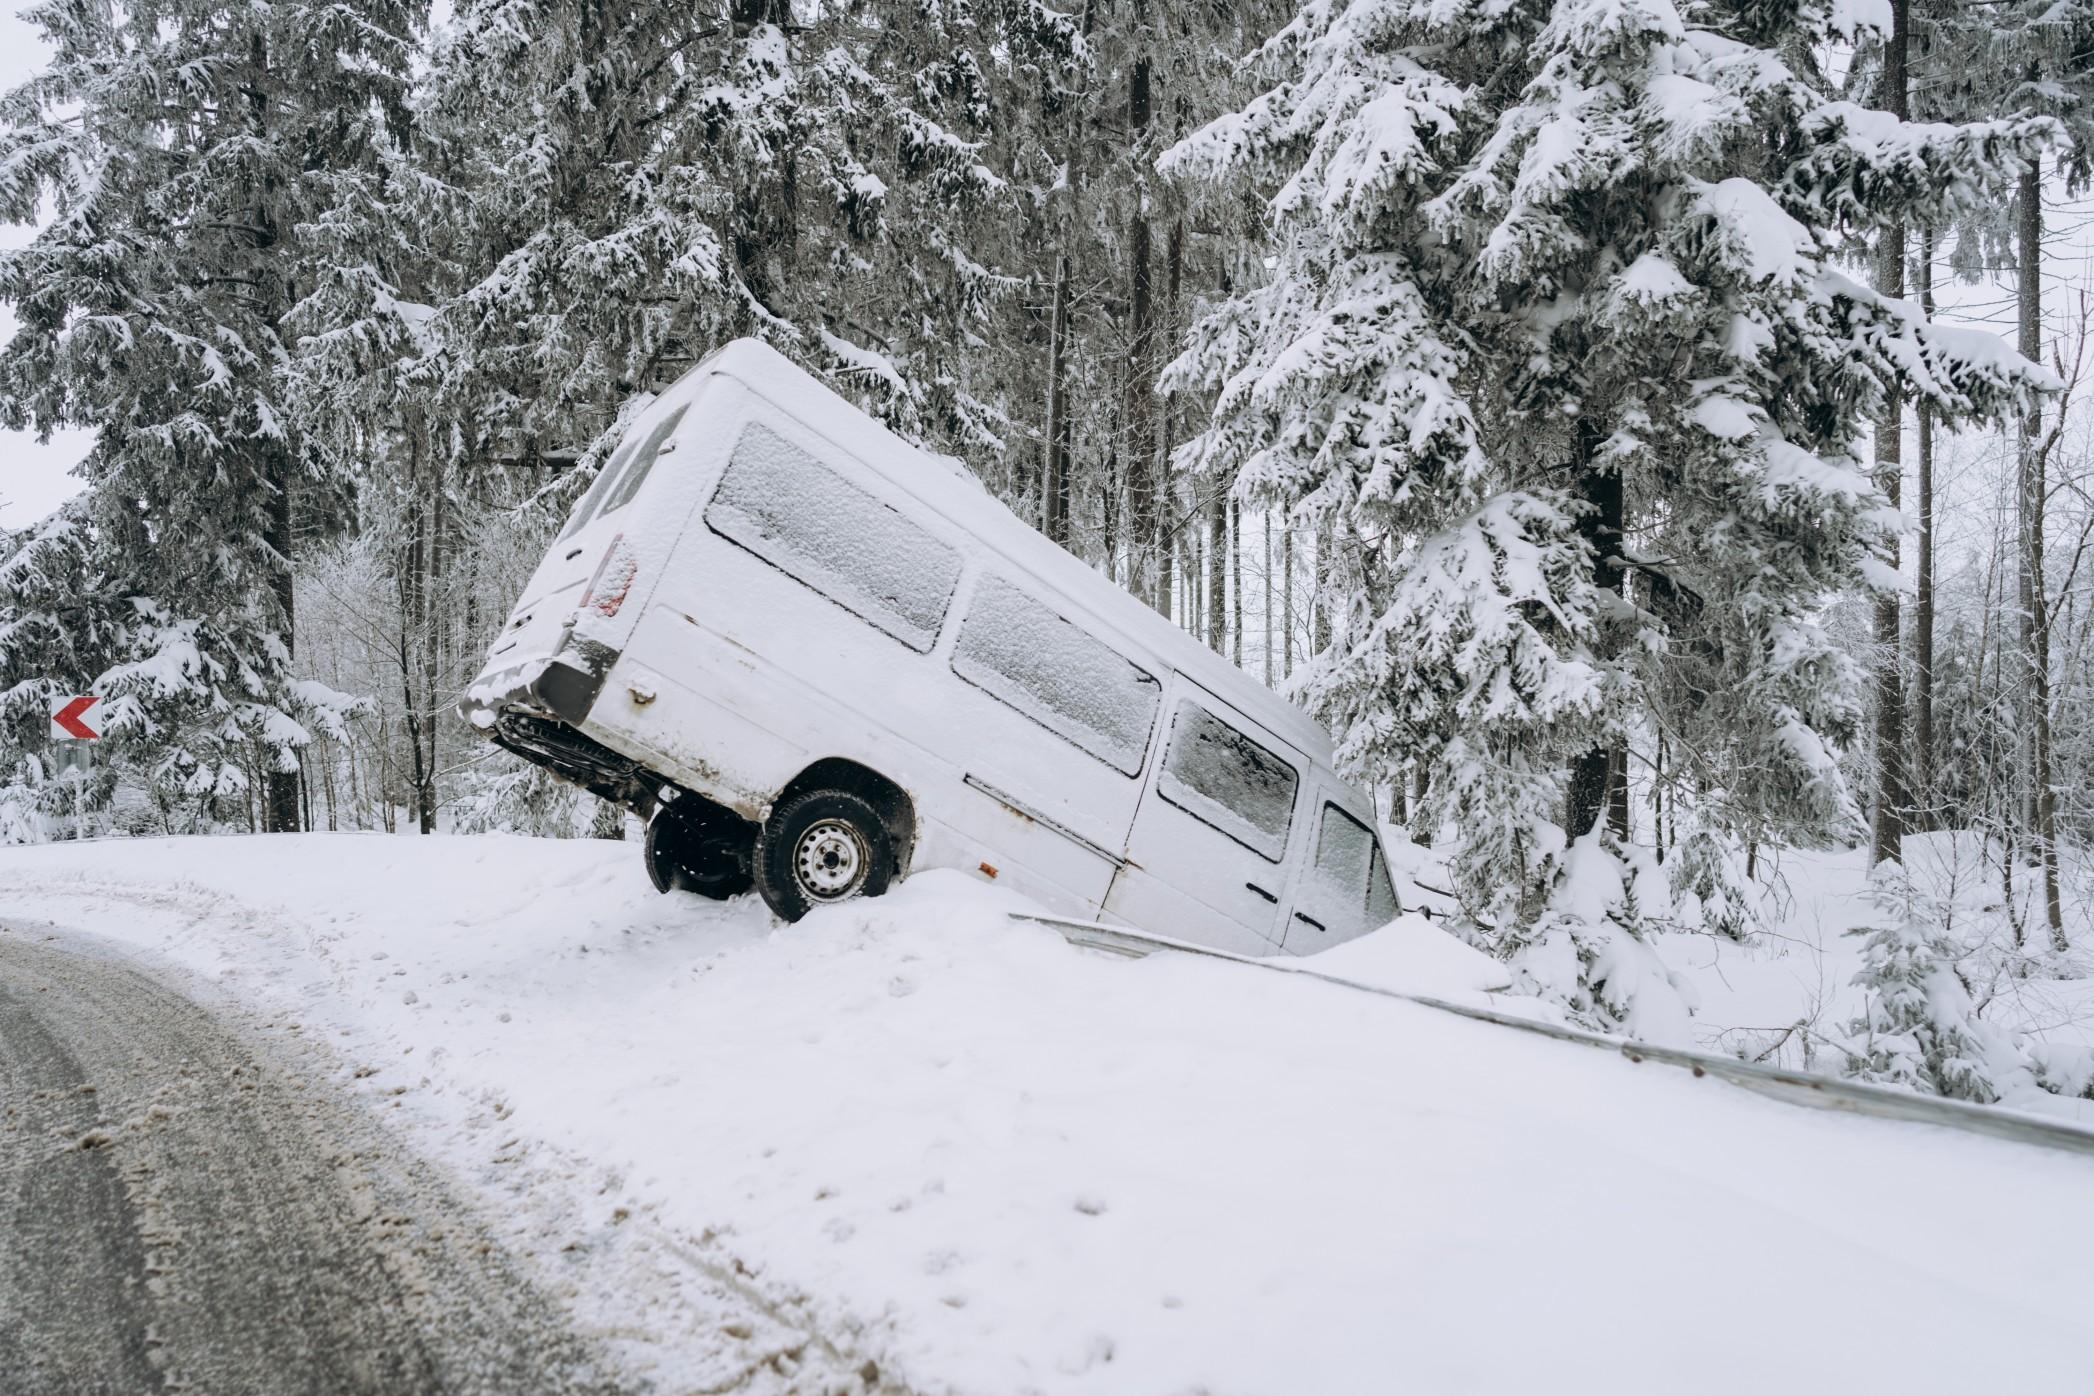 冬天可以极其危险的驾驶条件。”sizes=